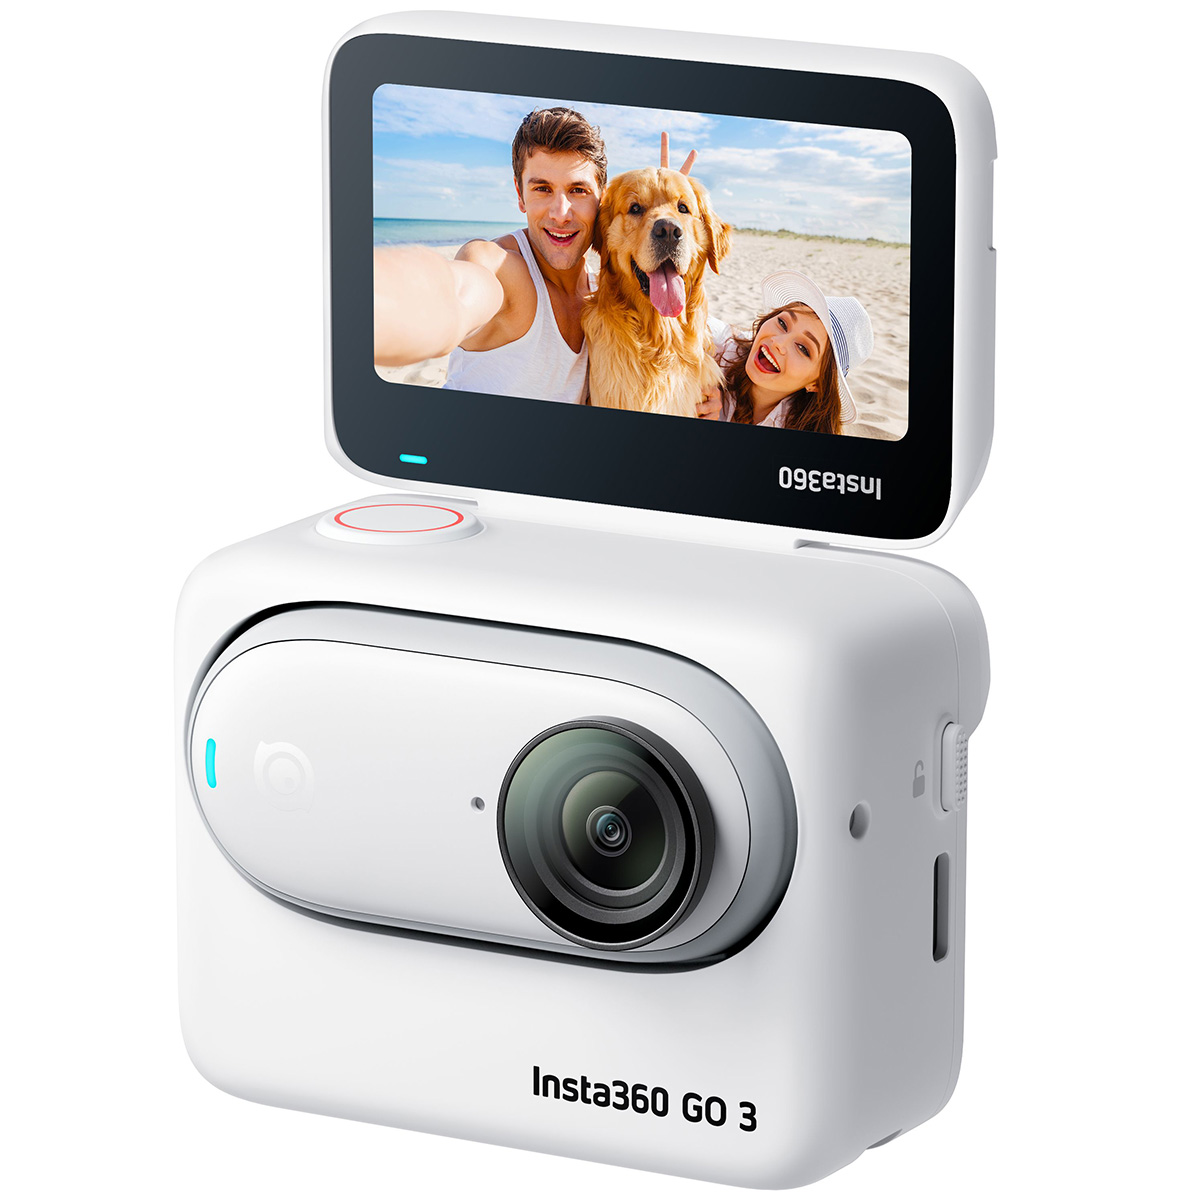 アクションカメラ Insta360 GO 3 (64GB)